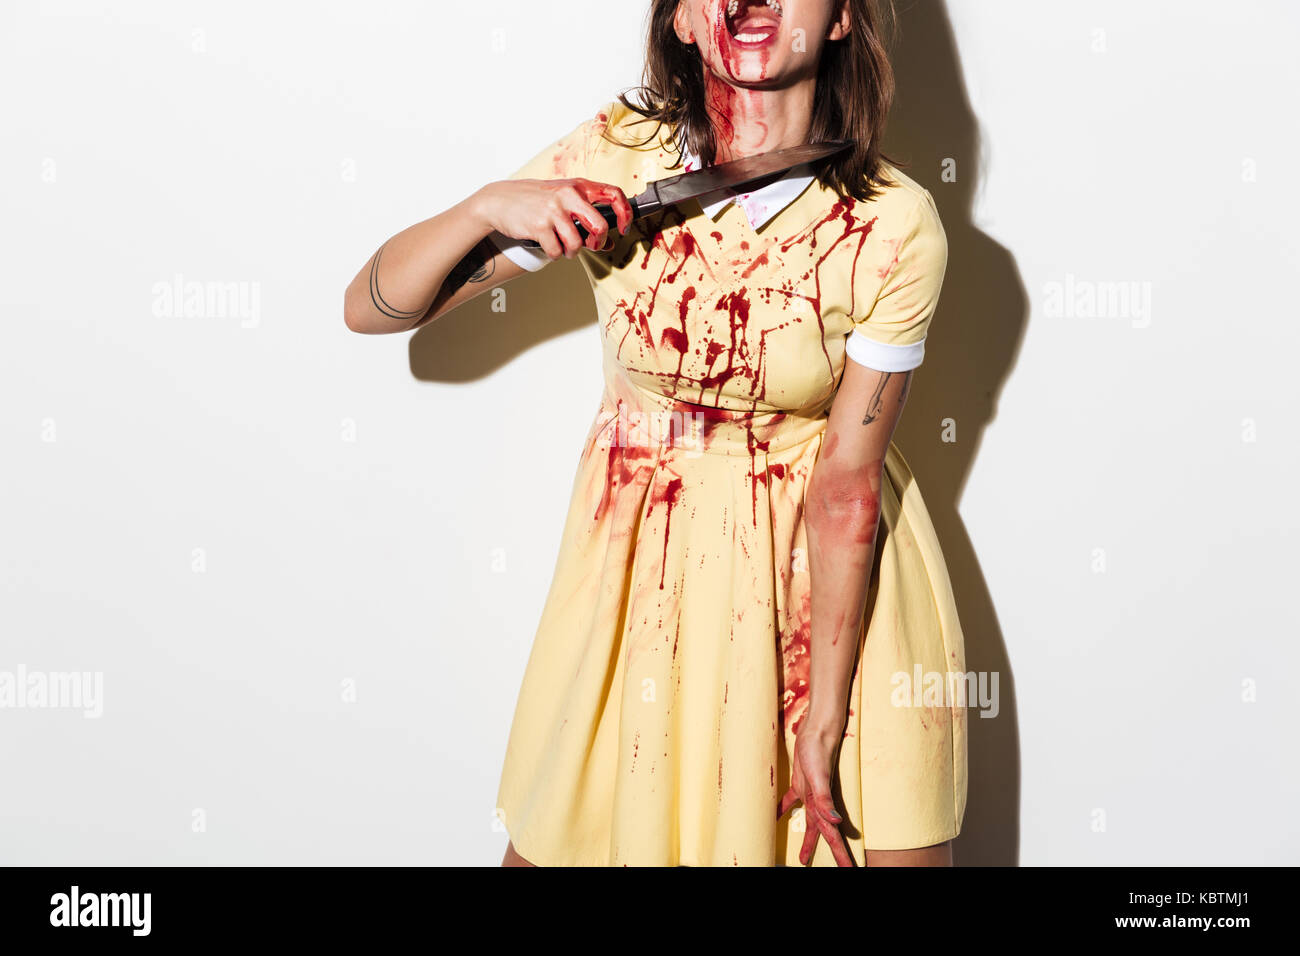 Immagine ritagliata di una donna zombie bleading e feriti in possesso di un coltello a sua gola isolate su sfondo bianco Foto Stock